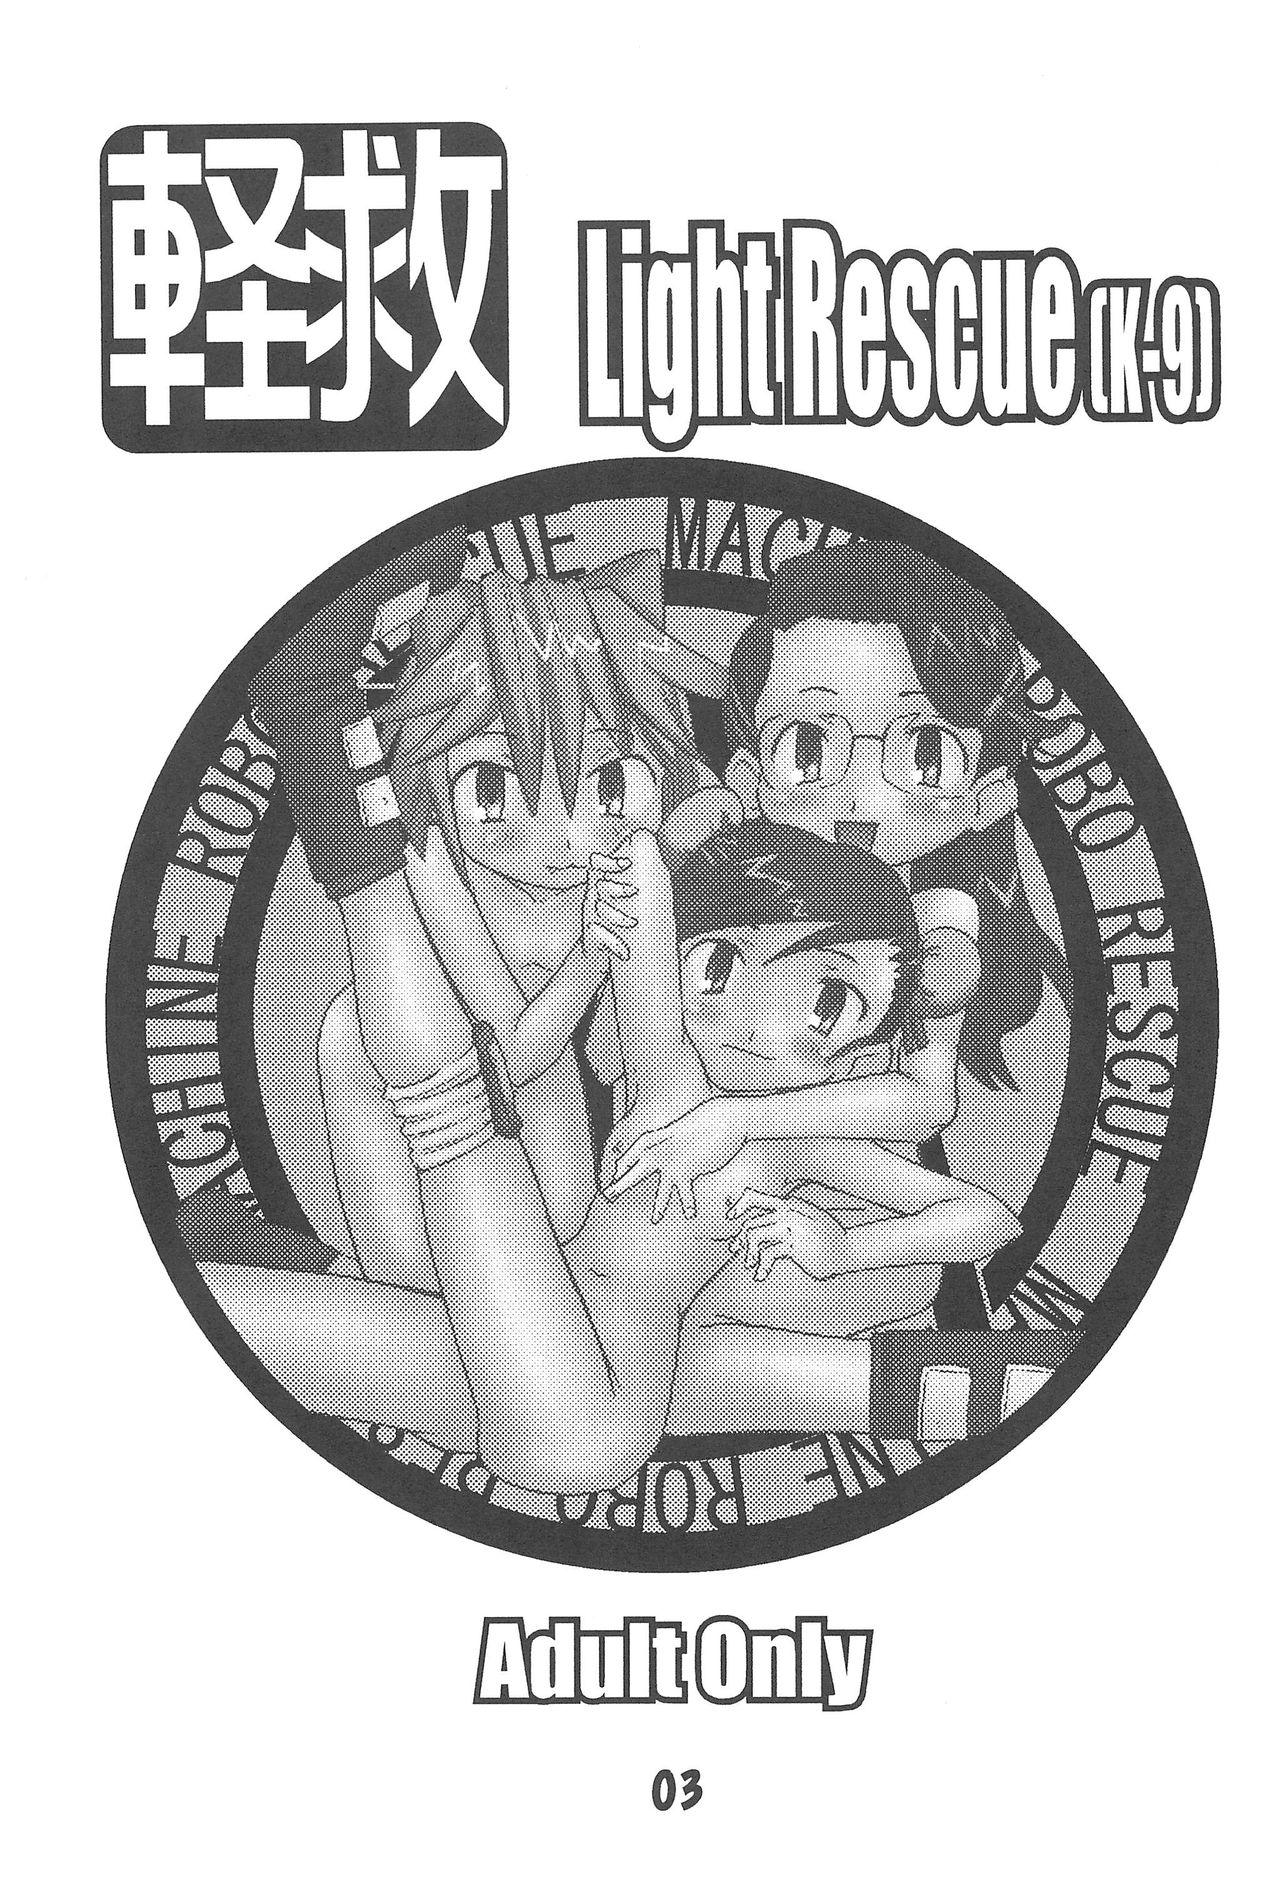 Keikyuu Light Rescue 4